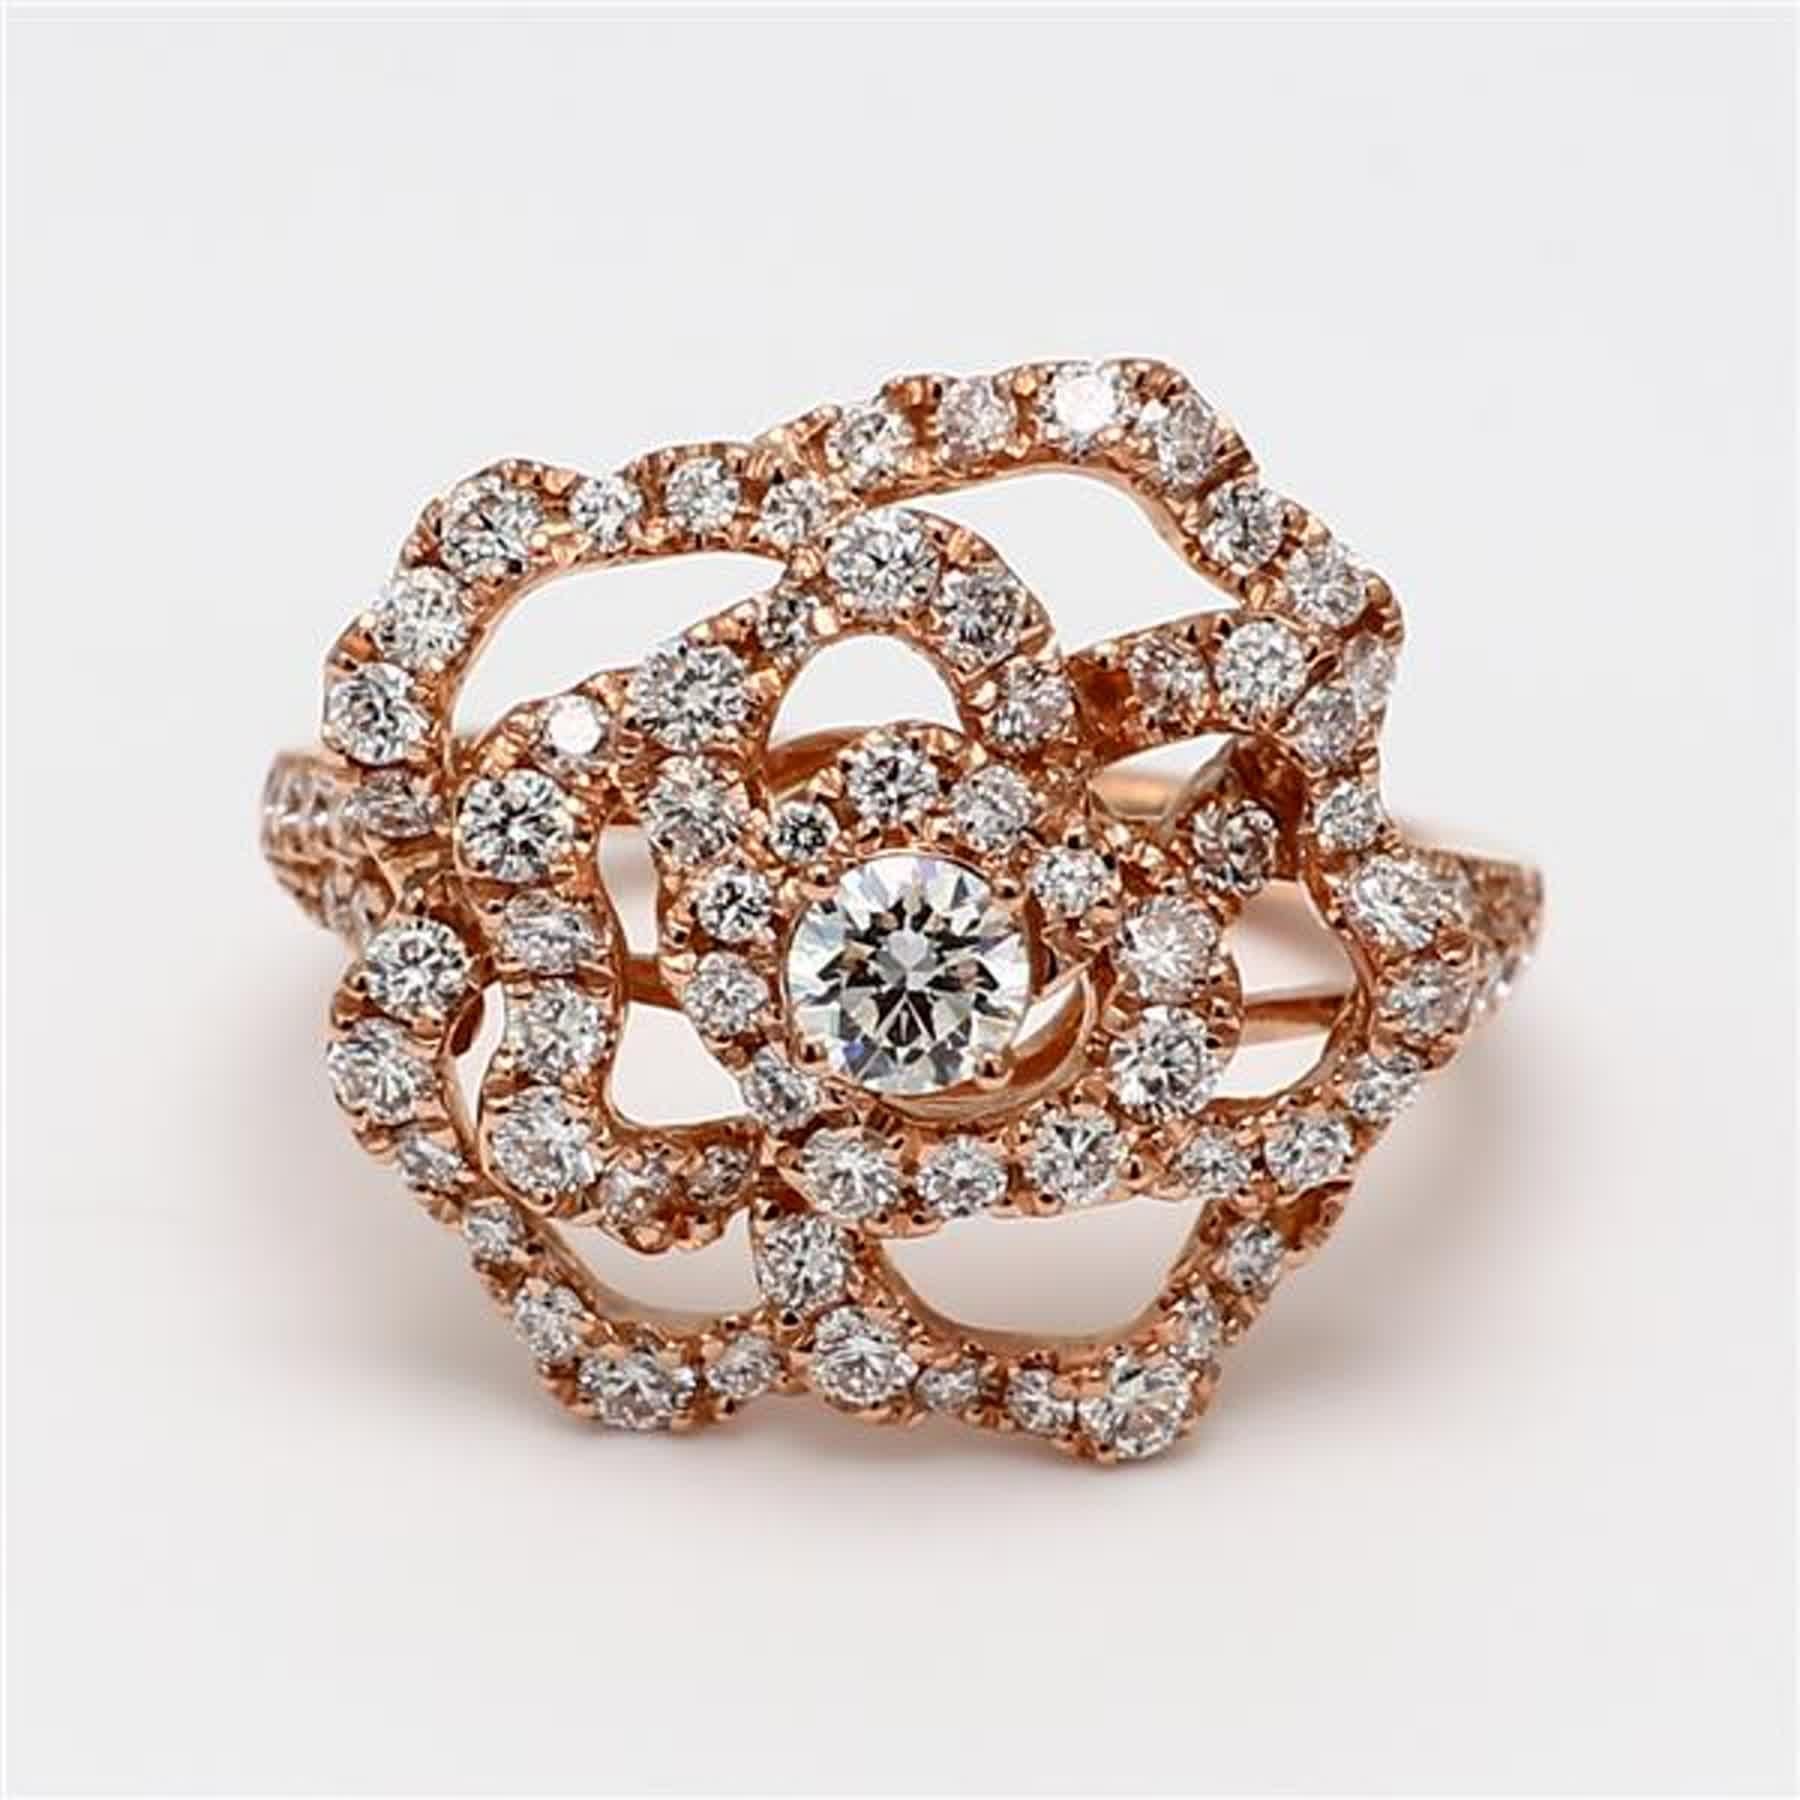 Der klassische Diamantring von RareGemWorld. Montiert in einer schönen 18K Rose Gold Fassung mit natürlichen runden weißen Diamanten Naht. Dieser Ring wird Sie garantiert beeindrucken und Ihre persönliche Sammlung bereichern!

Gesamtgewicht: